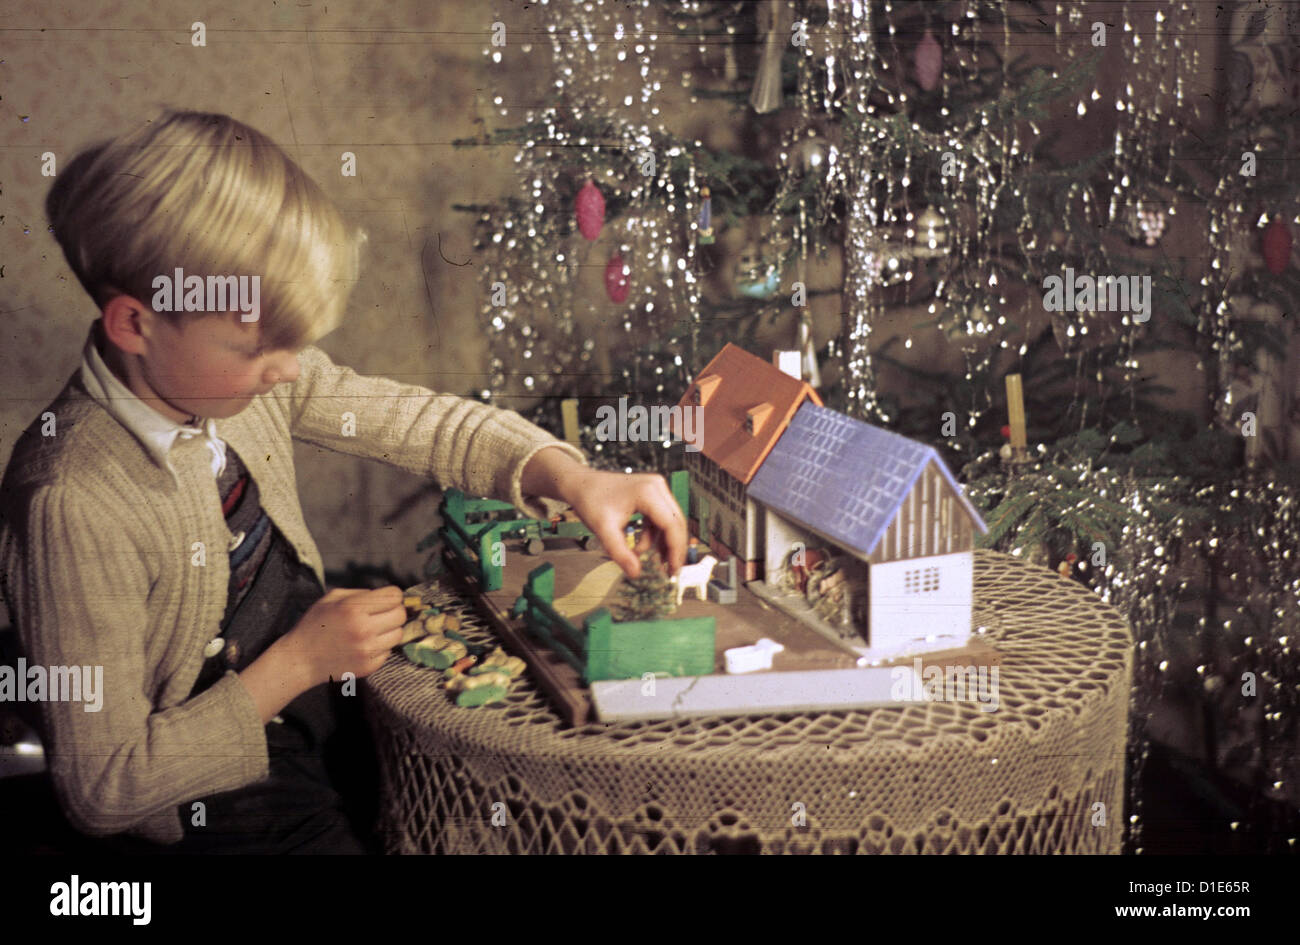 Noël dans l'après-guerre - un garçon joue avec son cadeau de Noël, un jouet ferme, la veille de Noël 1947. Photo : ddrbildarchiv.de/Bonitz Banque D'Images